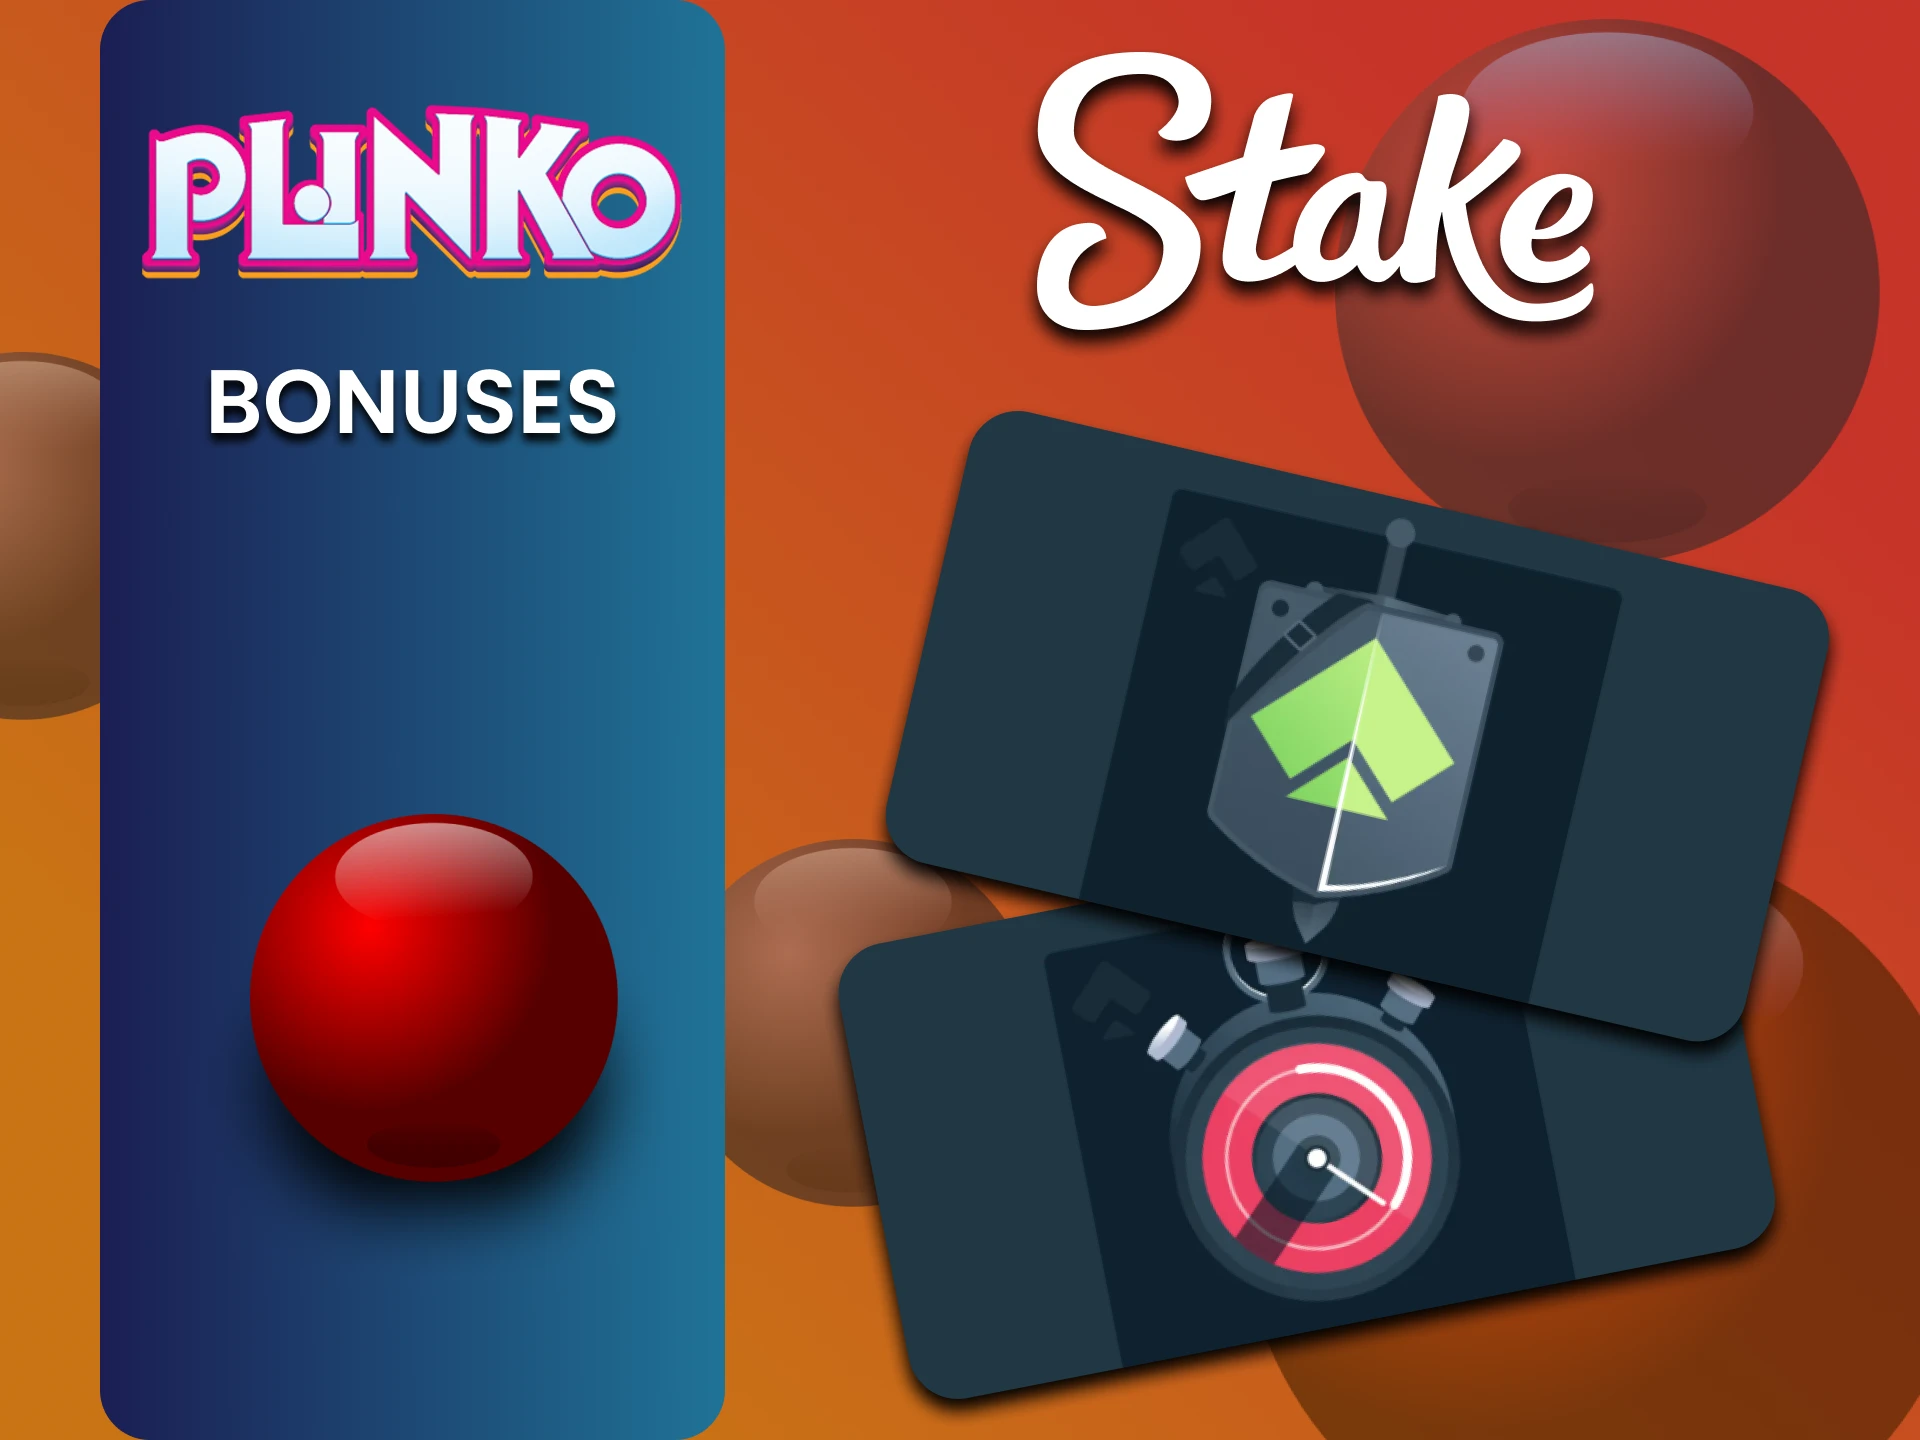 Stake gives bonuses to Plinko players.